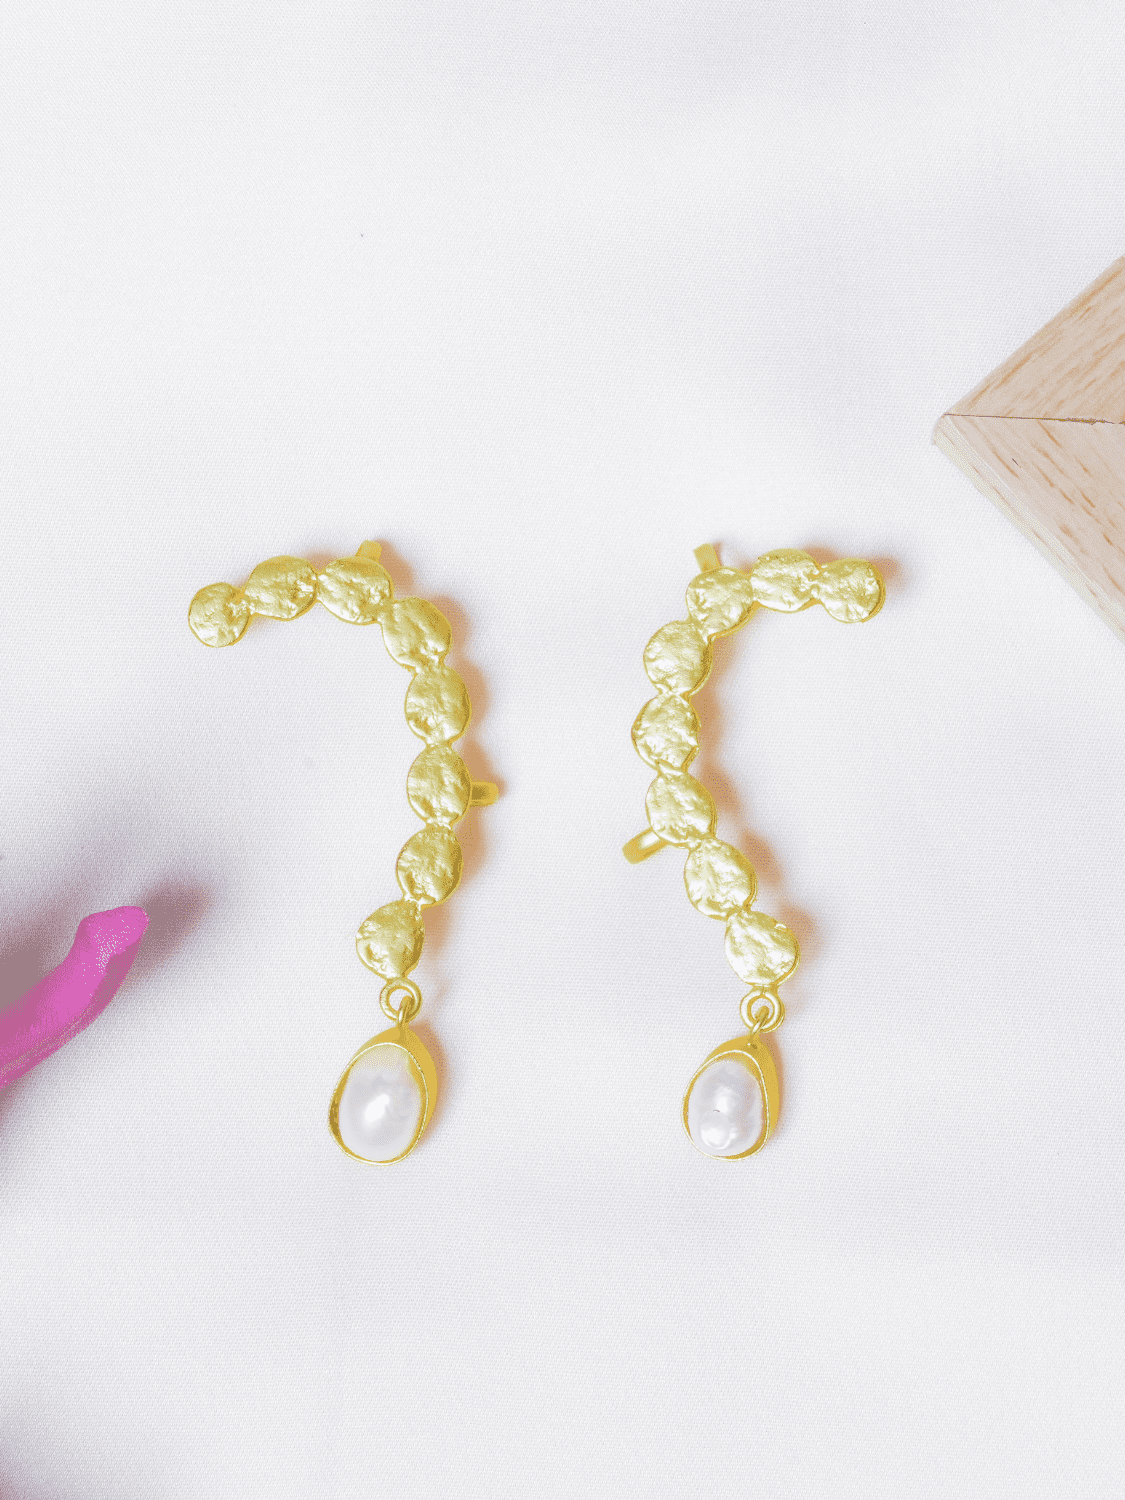 Gold plated pearl drops ear cuffs dangler earrings